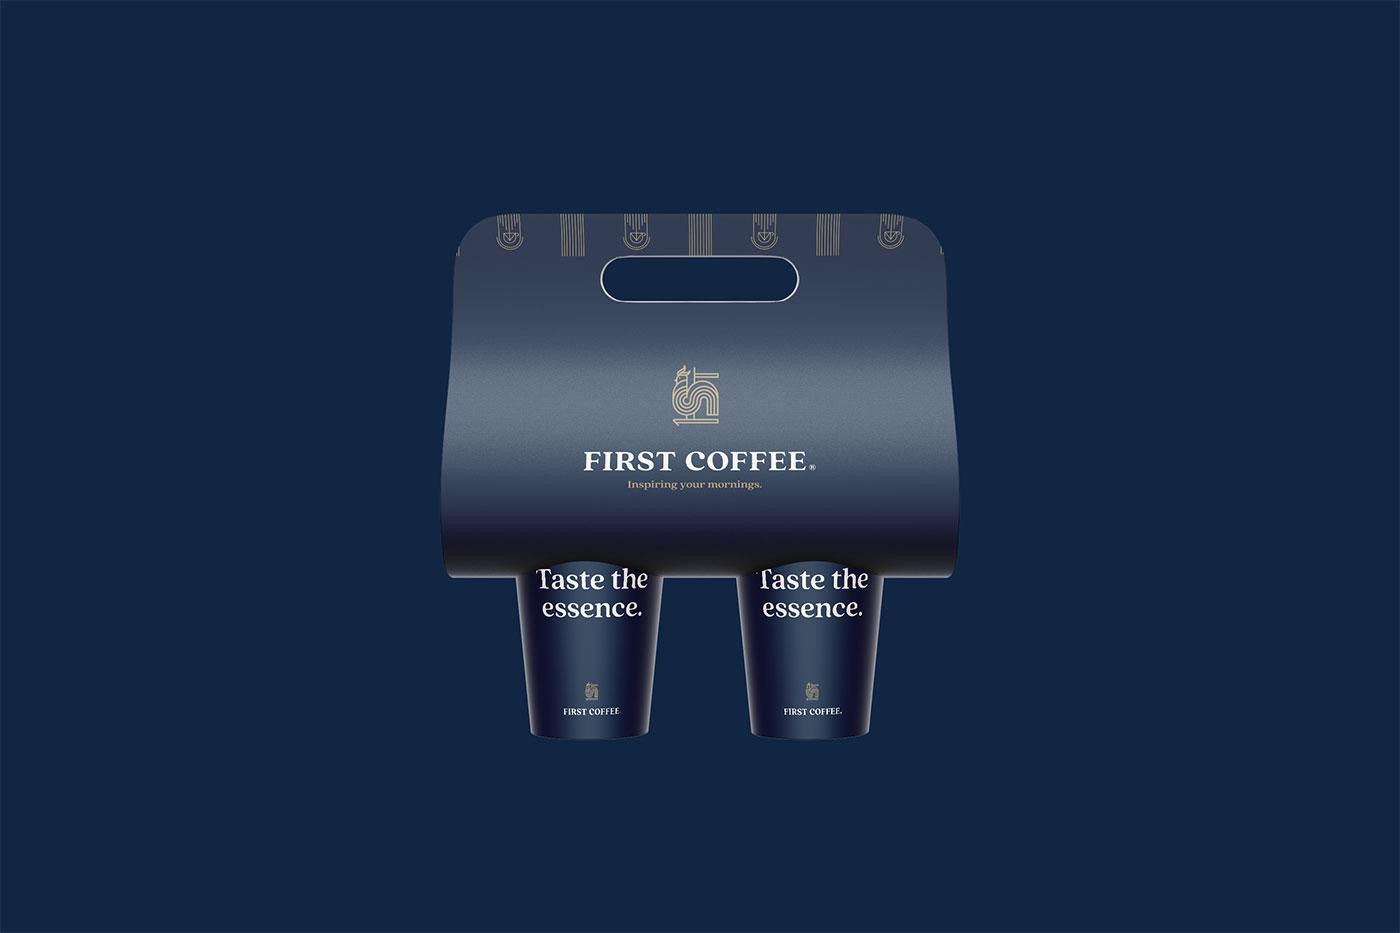 Zambelli Brand Design iz Rijeke osvojio nagradu The Best Brand Awards 2023 za oblikovanje identiteta branda FIRST COFFEE